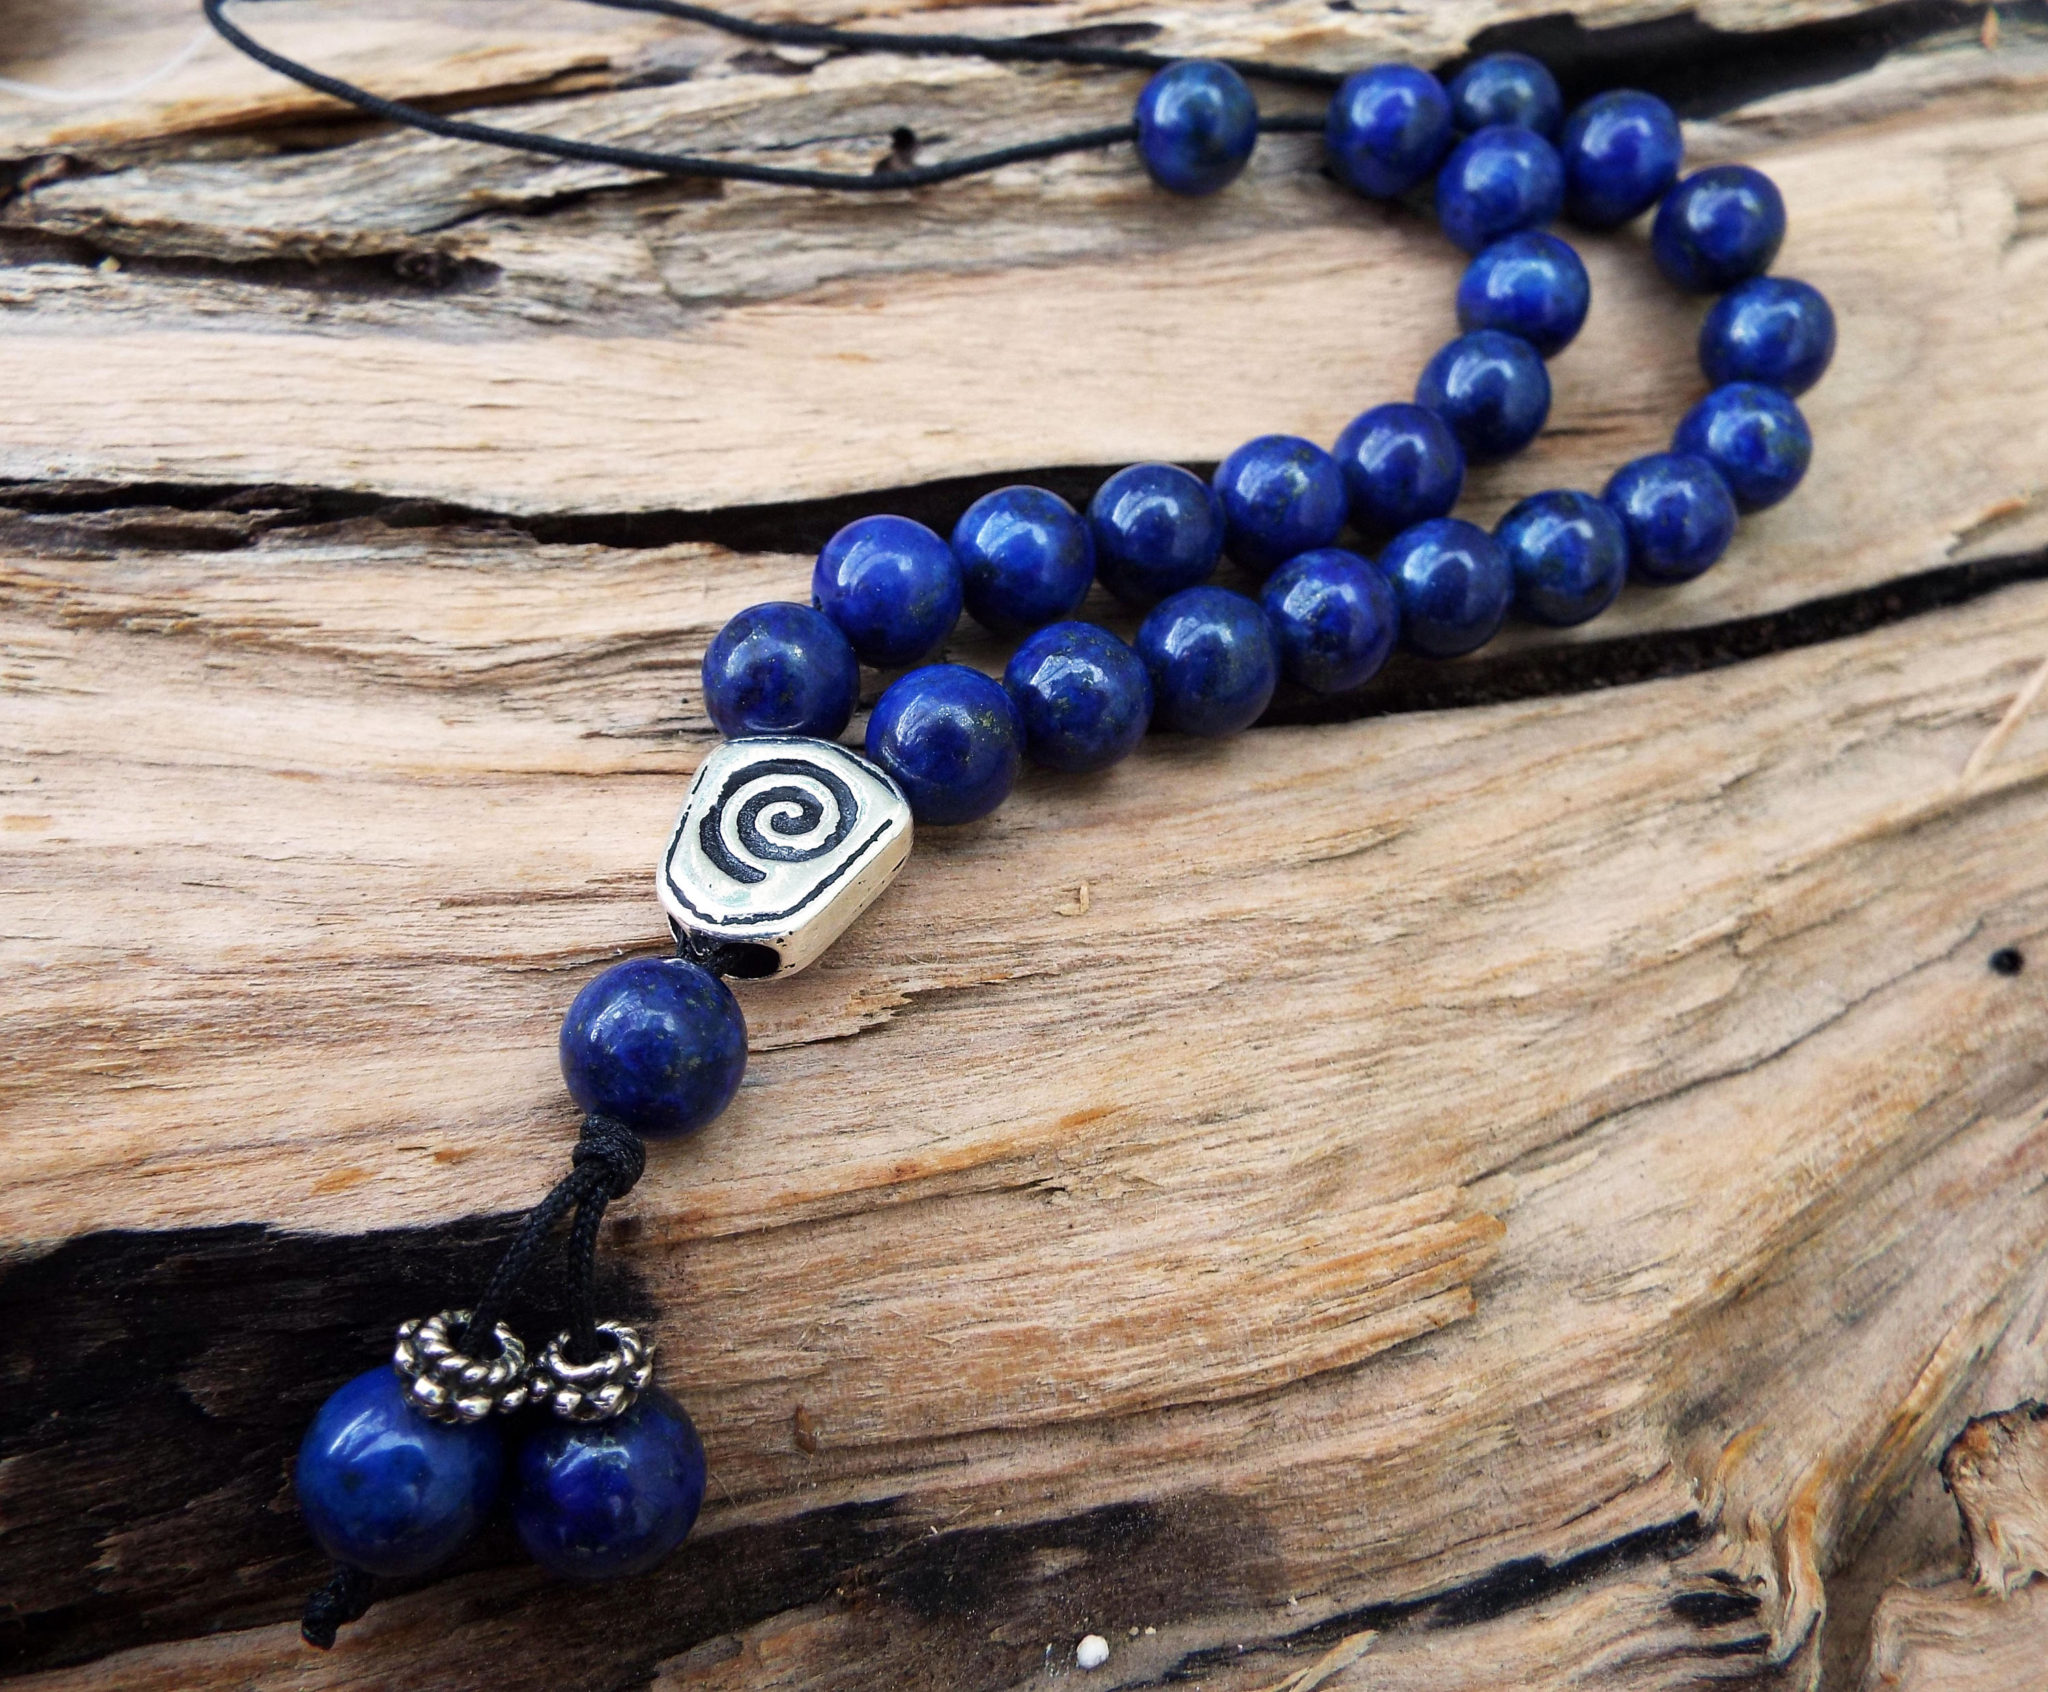 komboloi-greek-worry-beads-lapis-lazuli-prayer-beads-rosary-beads-turkish-tasbih-handmade-gemstone-5941040f1.jpg